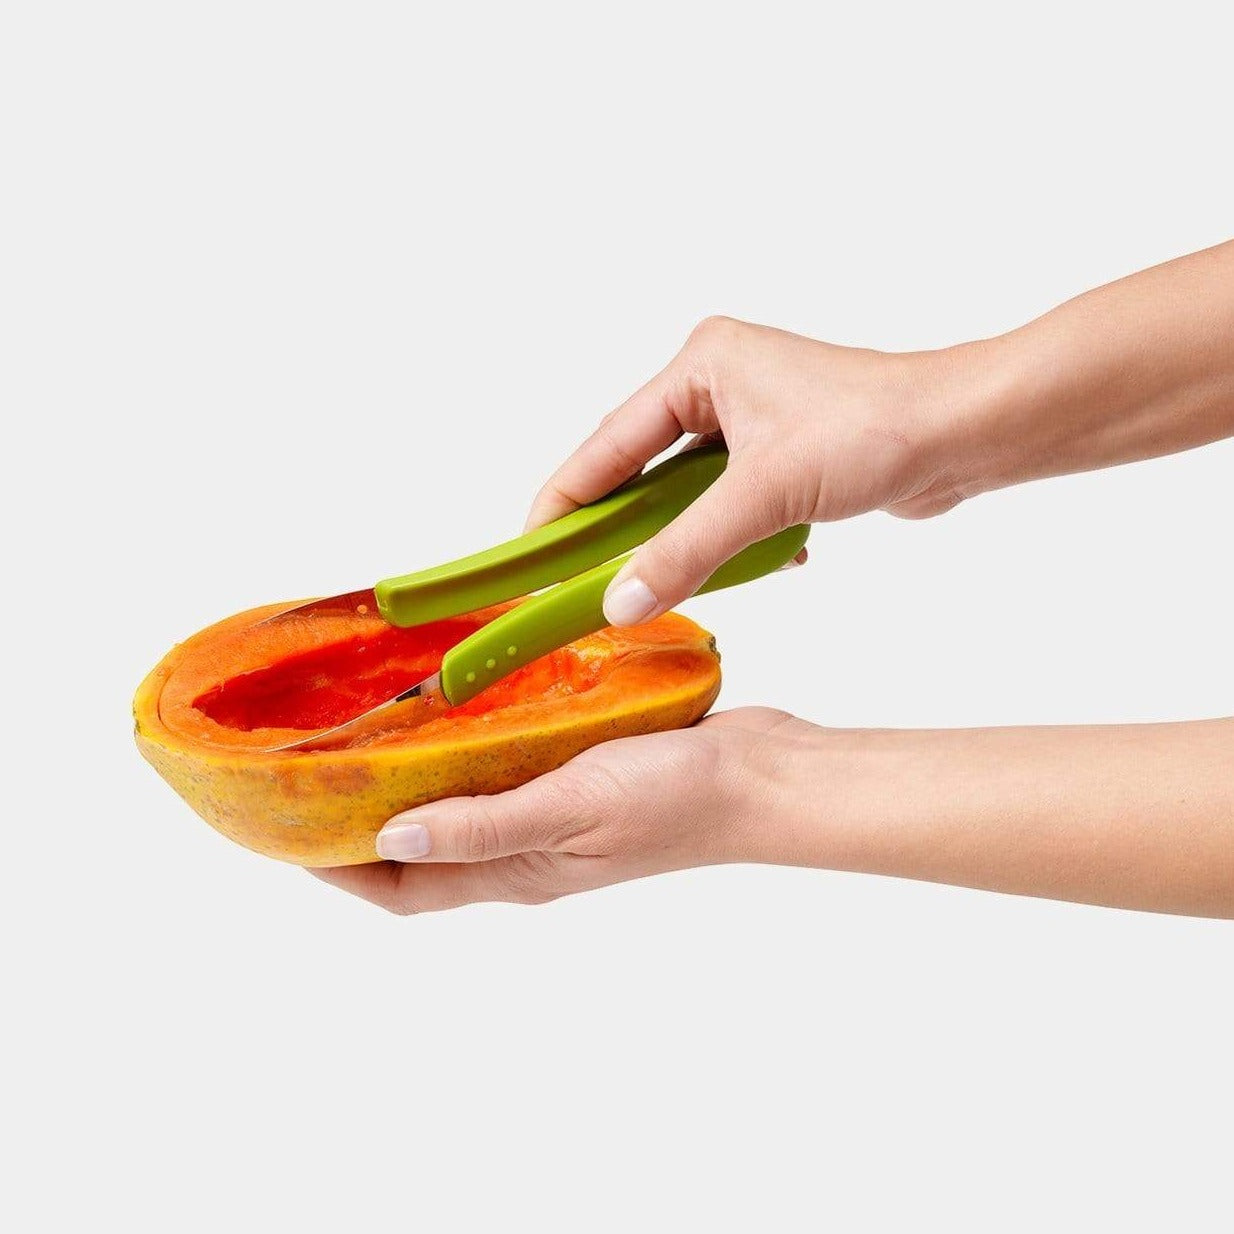 Melon Baller/Fruit Scoop – The Convenient Kitchen